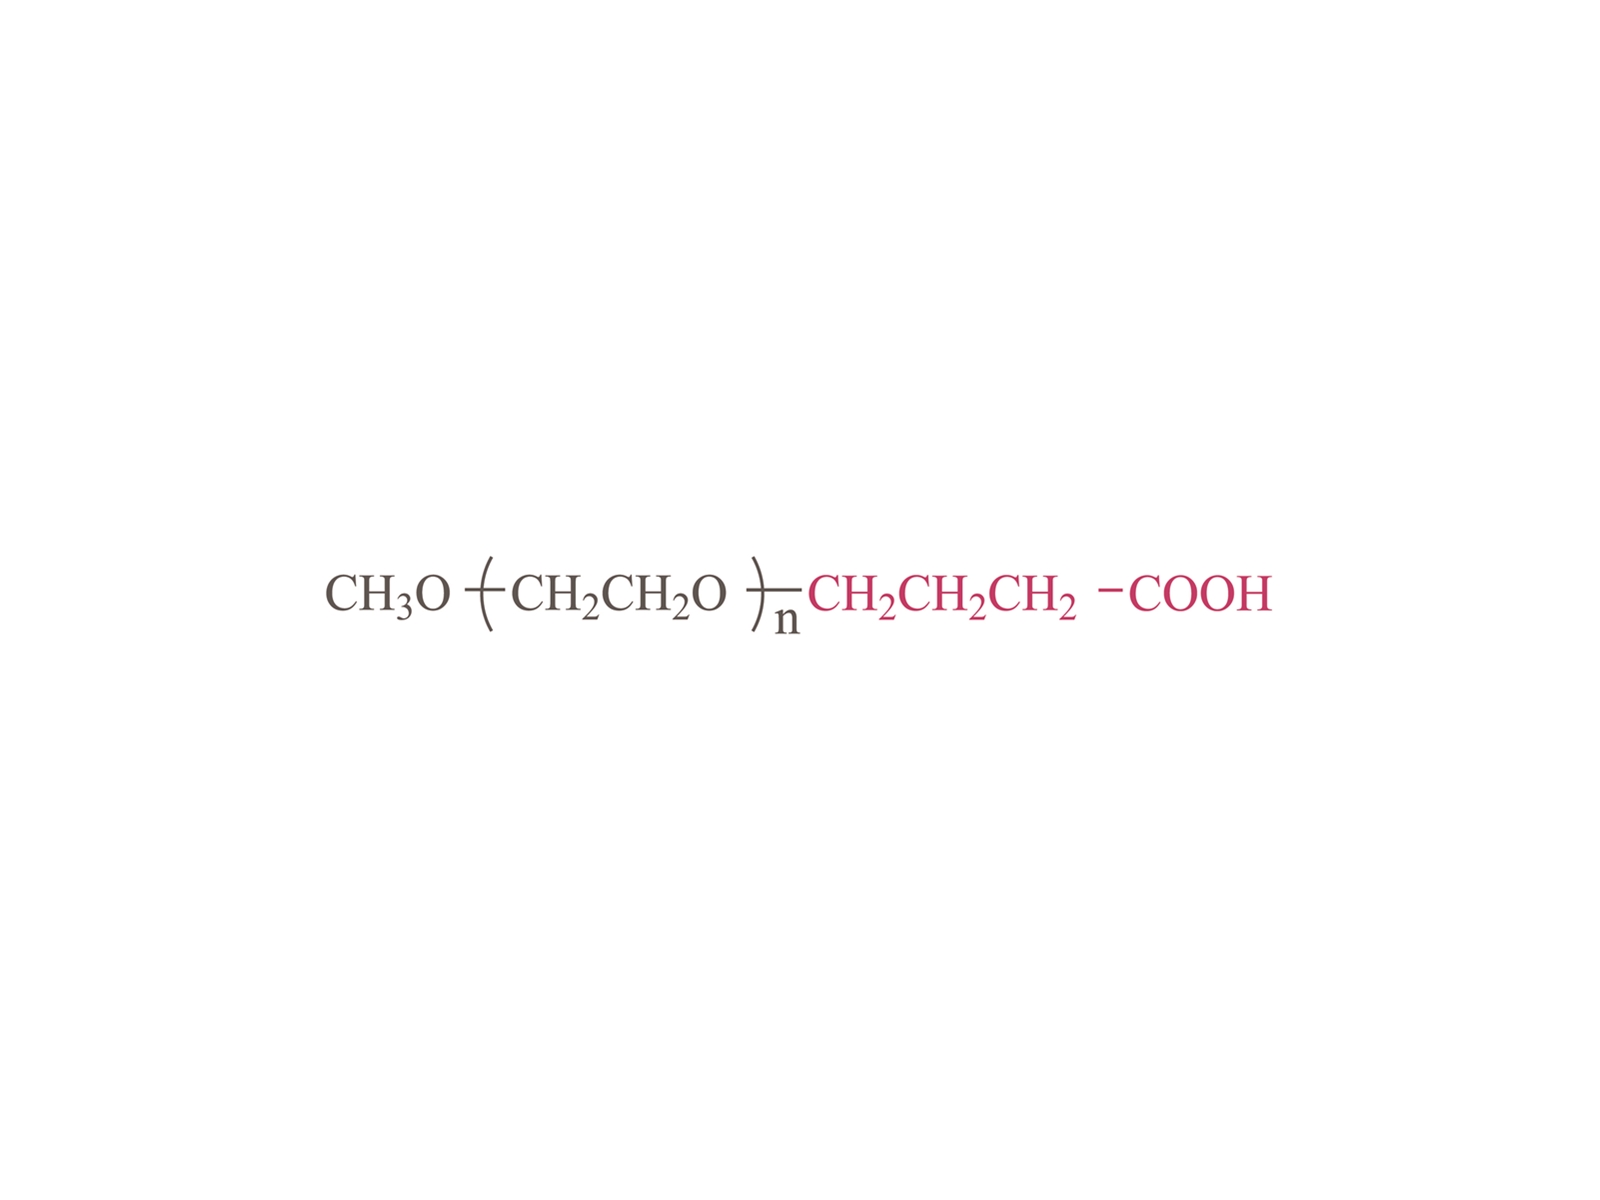 Acido butanoico di metossipoly (glicole etilene) [MPEG-BA]